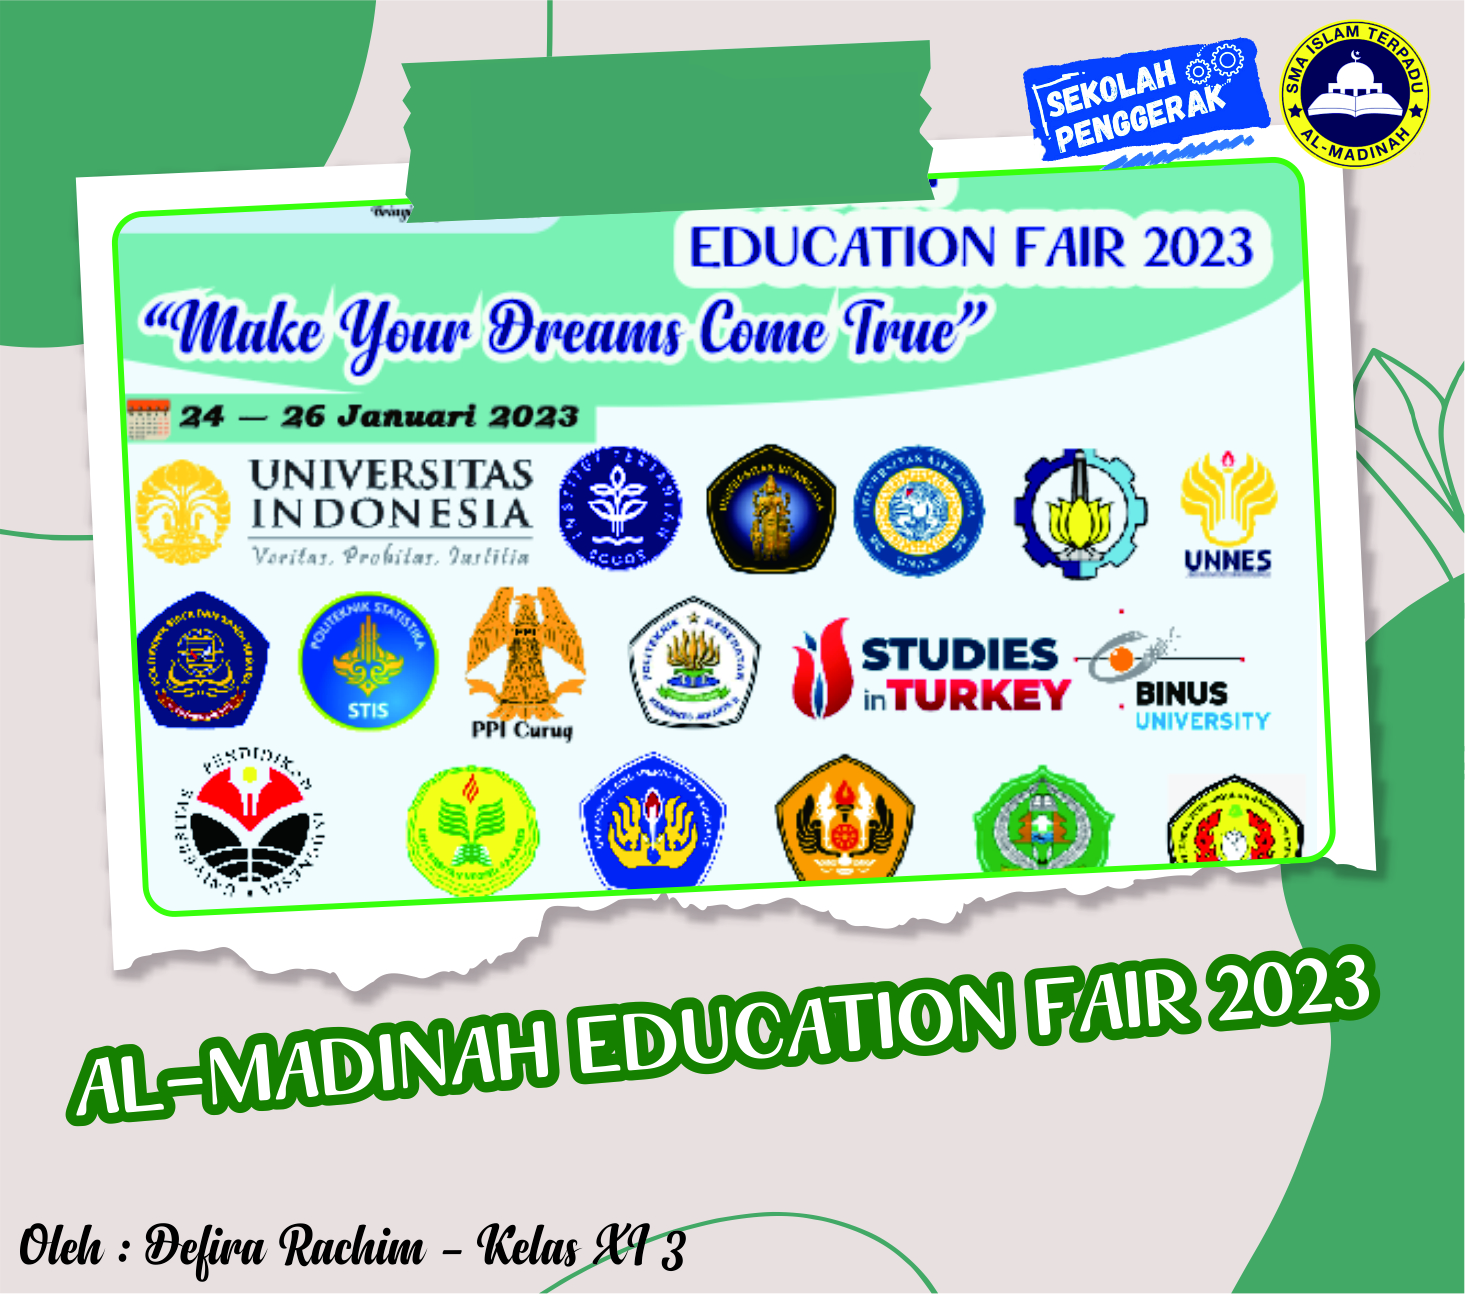 Al-Madinah Education Fair 2023